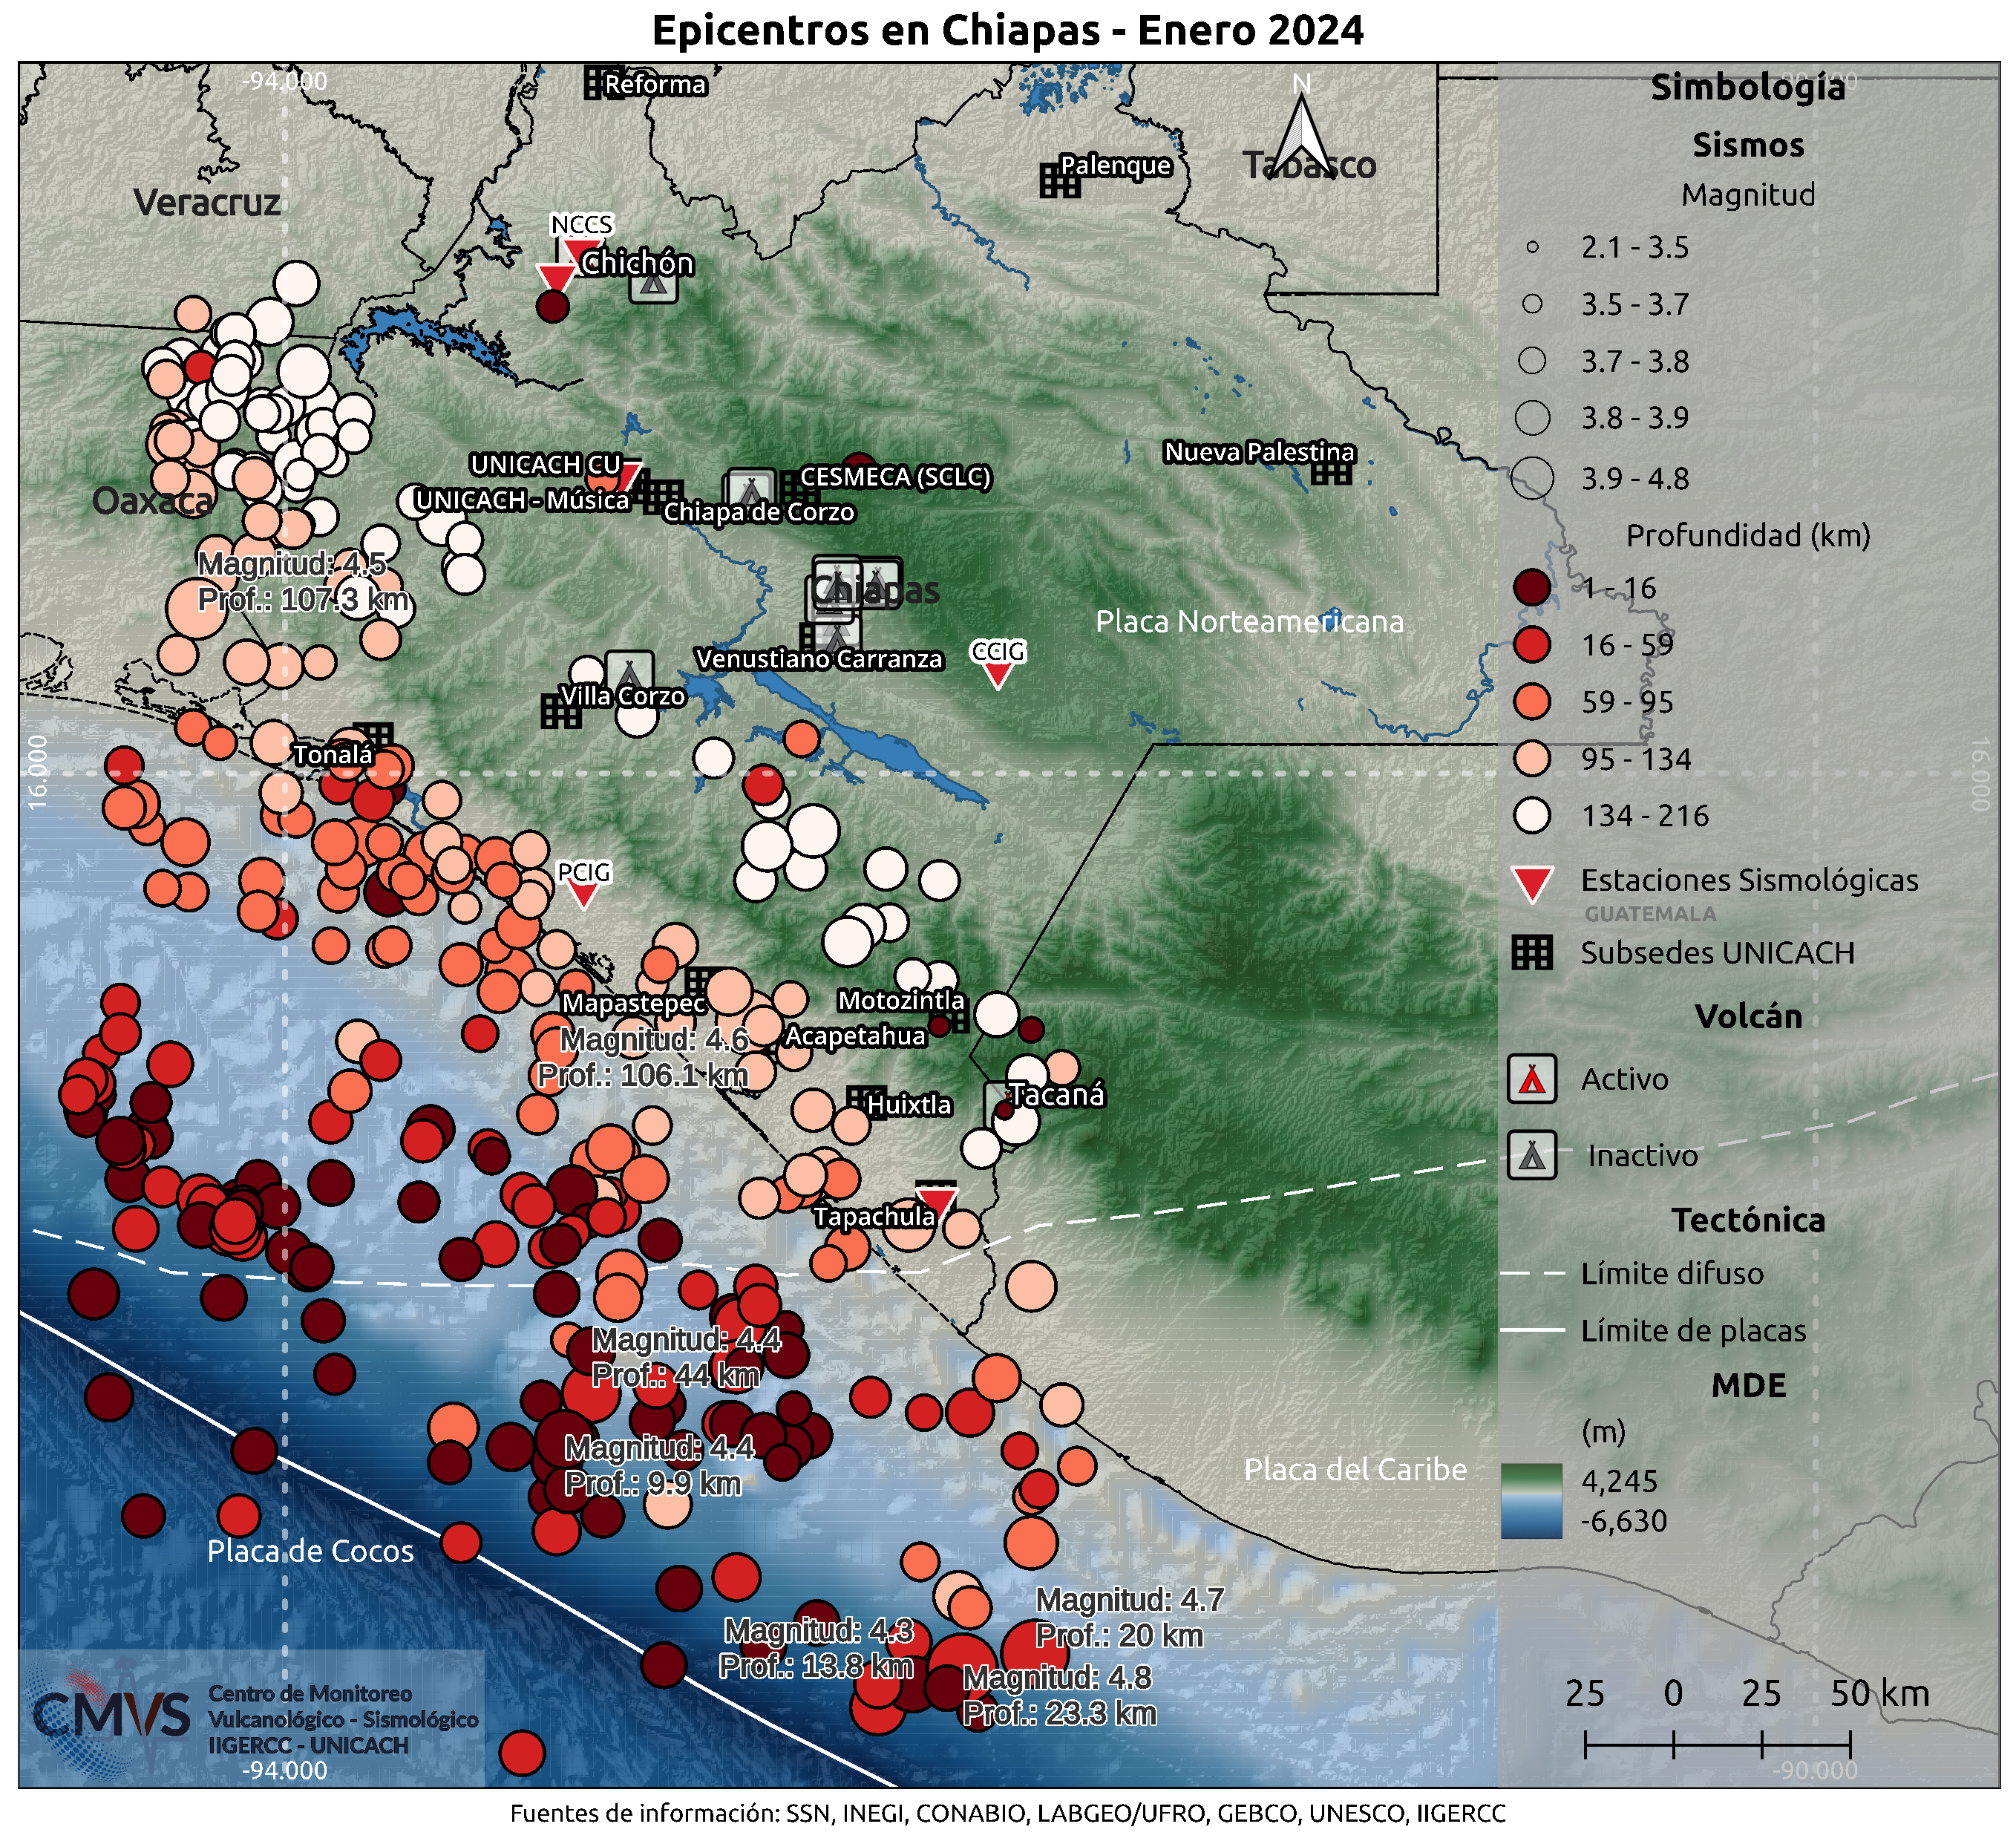 Mapa de la sismicidad ocurrida durante el mes de enero de 2024 en el estado de Chiapas. Fuente de información: SSN, INEGI, CONABIO, LABGE/UFRO, GEBCO, UNESCO, IIGERCC.